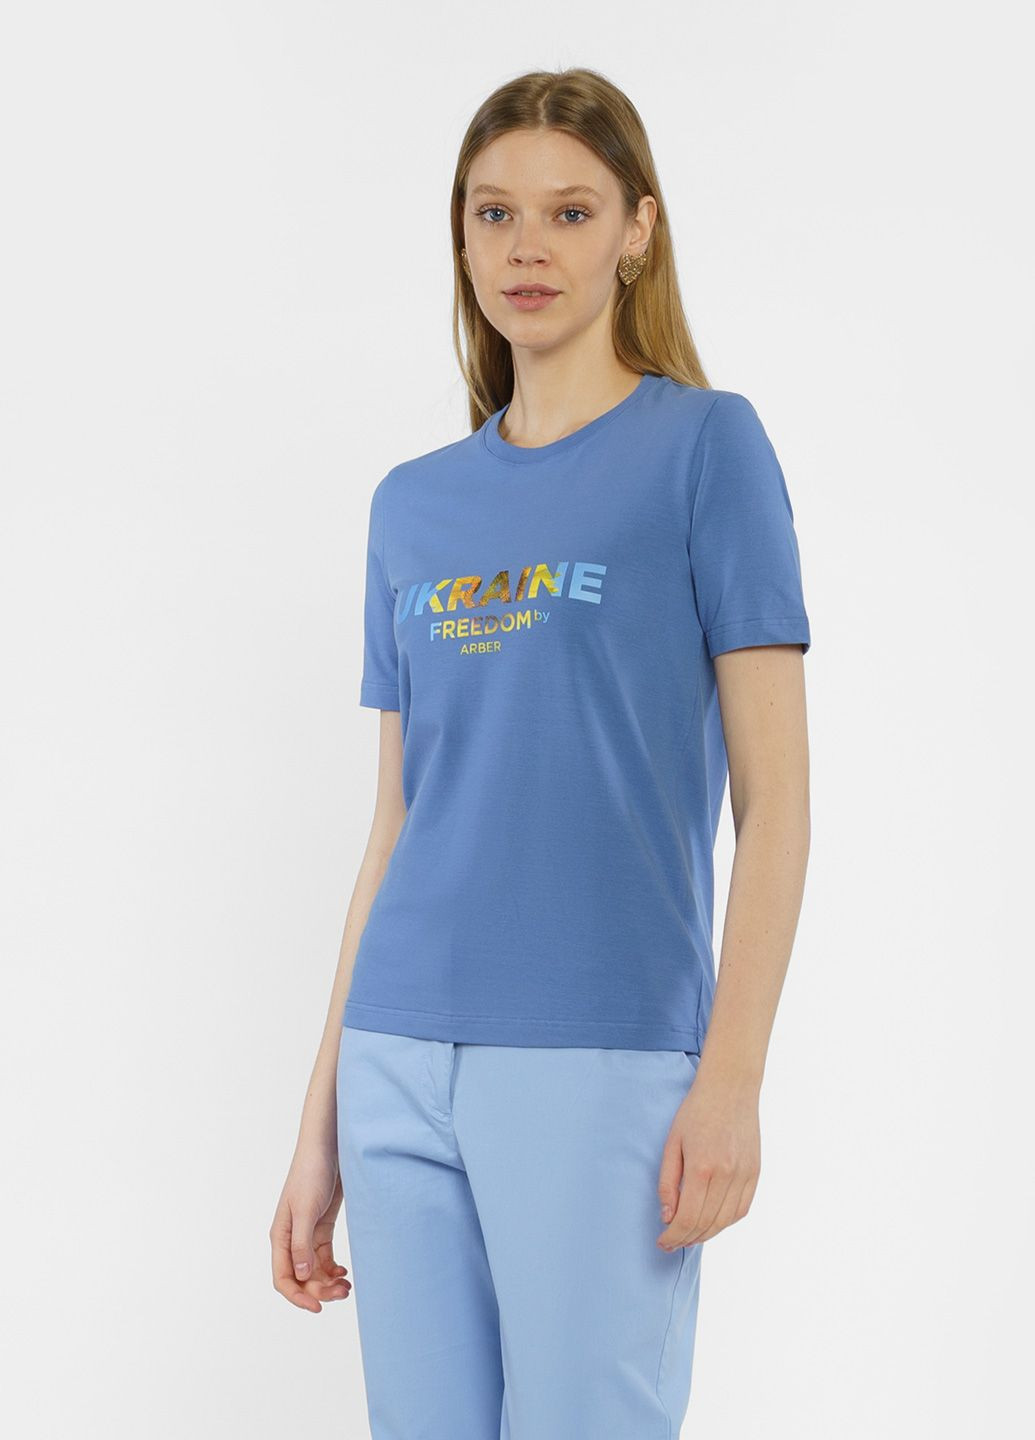 Синяя летняя футболка женская синяя Arber Futbolka WClassic